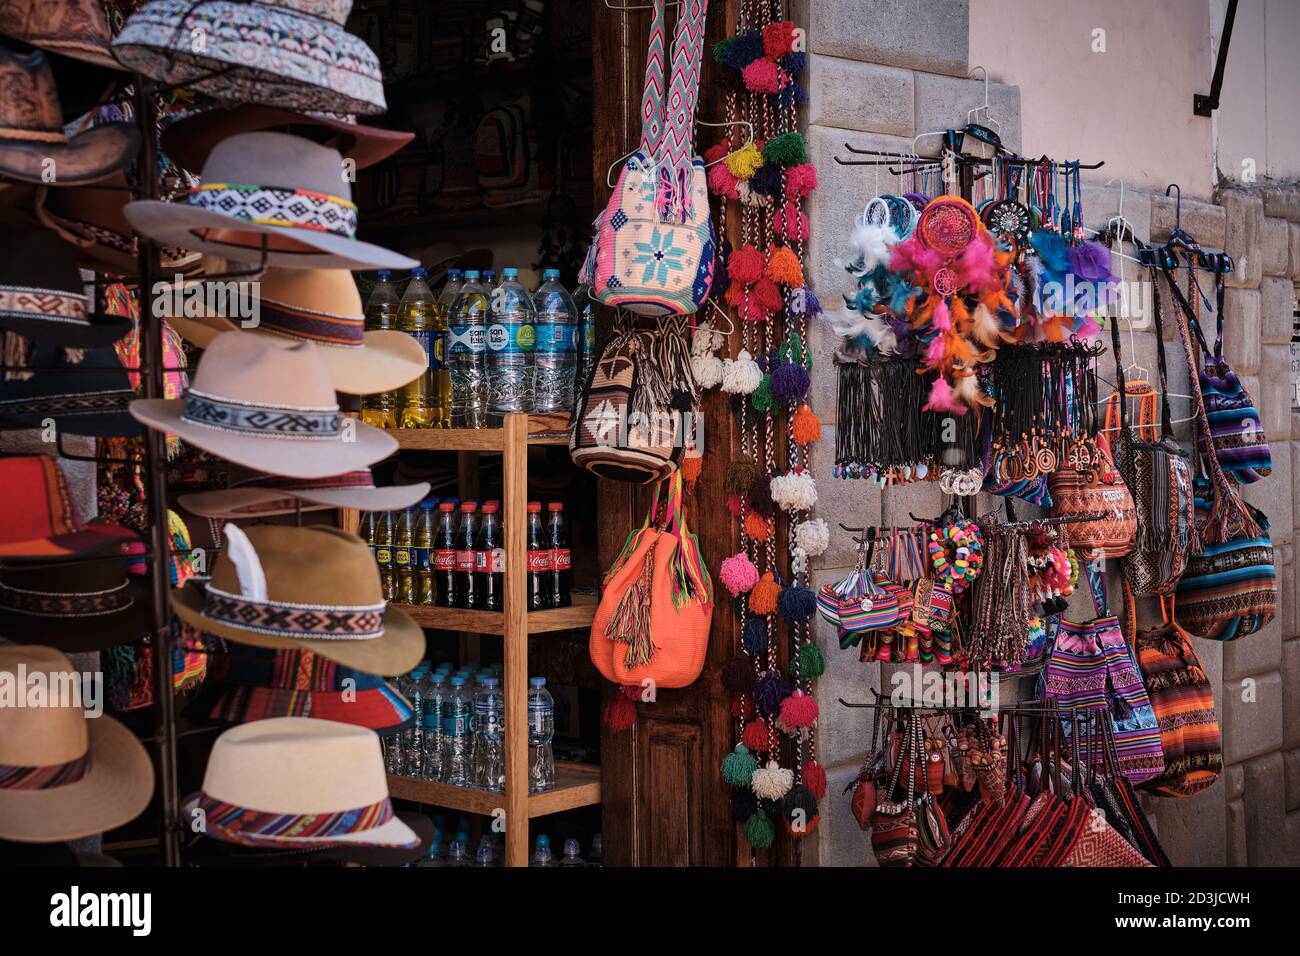 Un marché au marché Pisac Pisaq, au Pérou, qui vend des cadeaux de fantaisie, des souvenirs, des chapeaux et des boissons gazeuses Banque D'Images